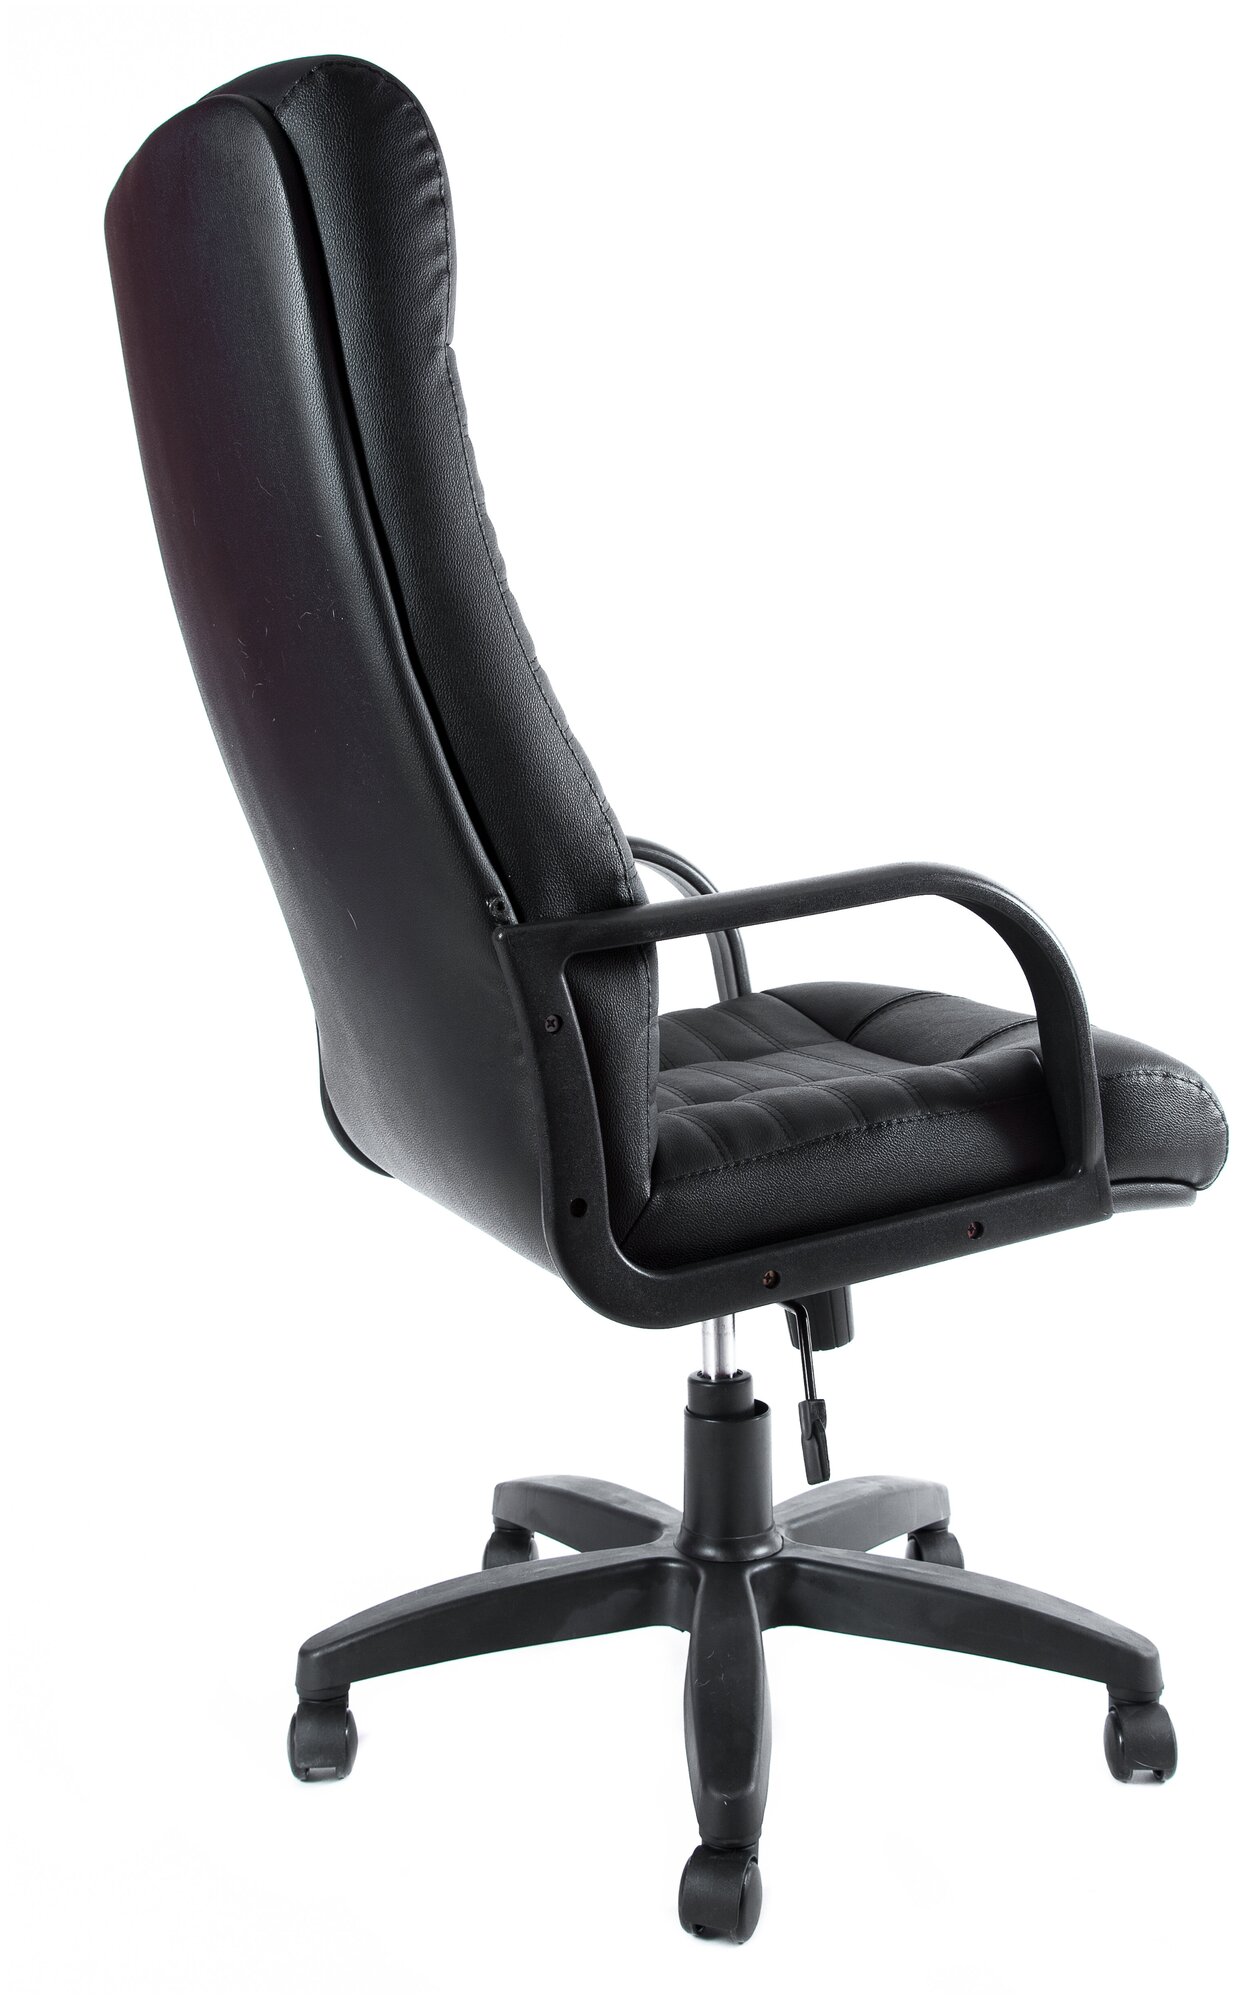 Компьютерное кресло Евростиль Атлант офисное, обивка: натуральная кожа, цвет: черный